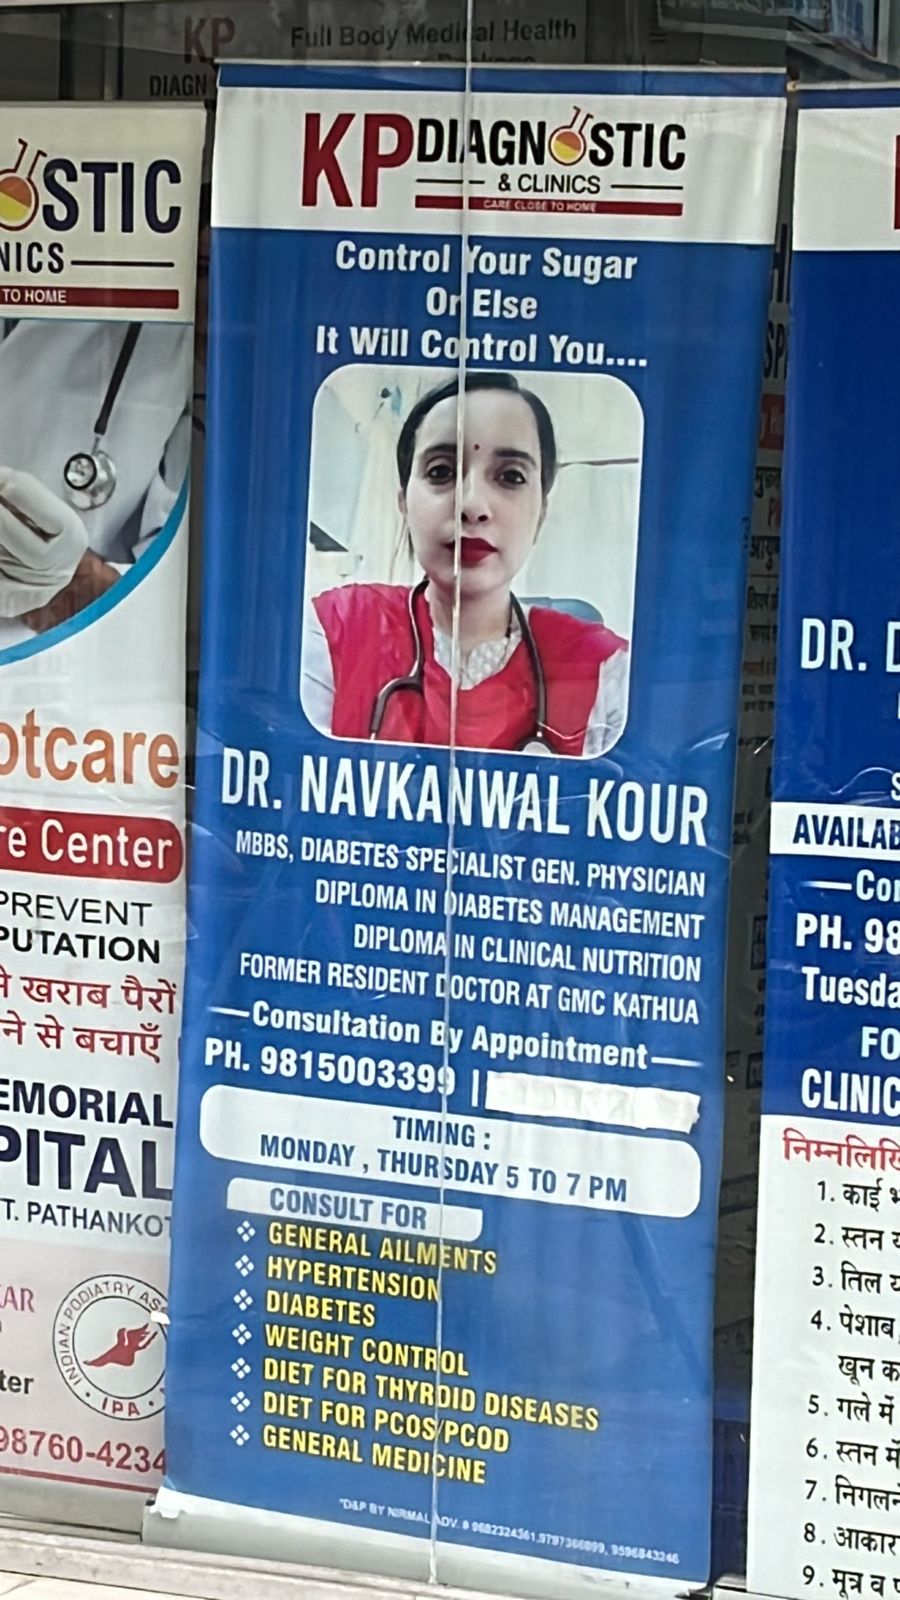 Dr Navkanwal